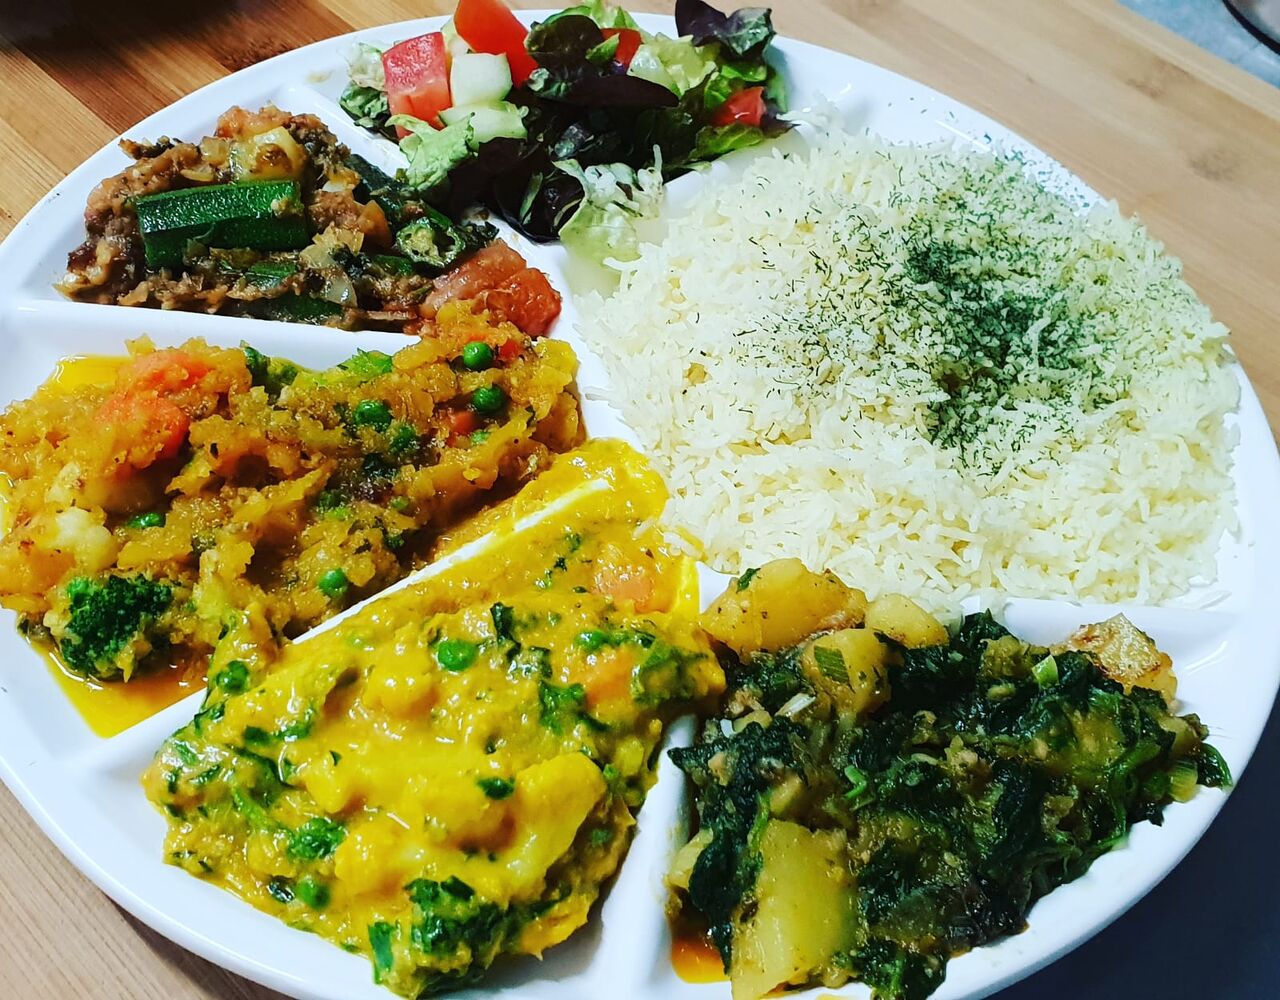 Punjabi - Restaurant Düsseldorf | Indian cuisine near me ...